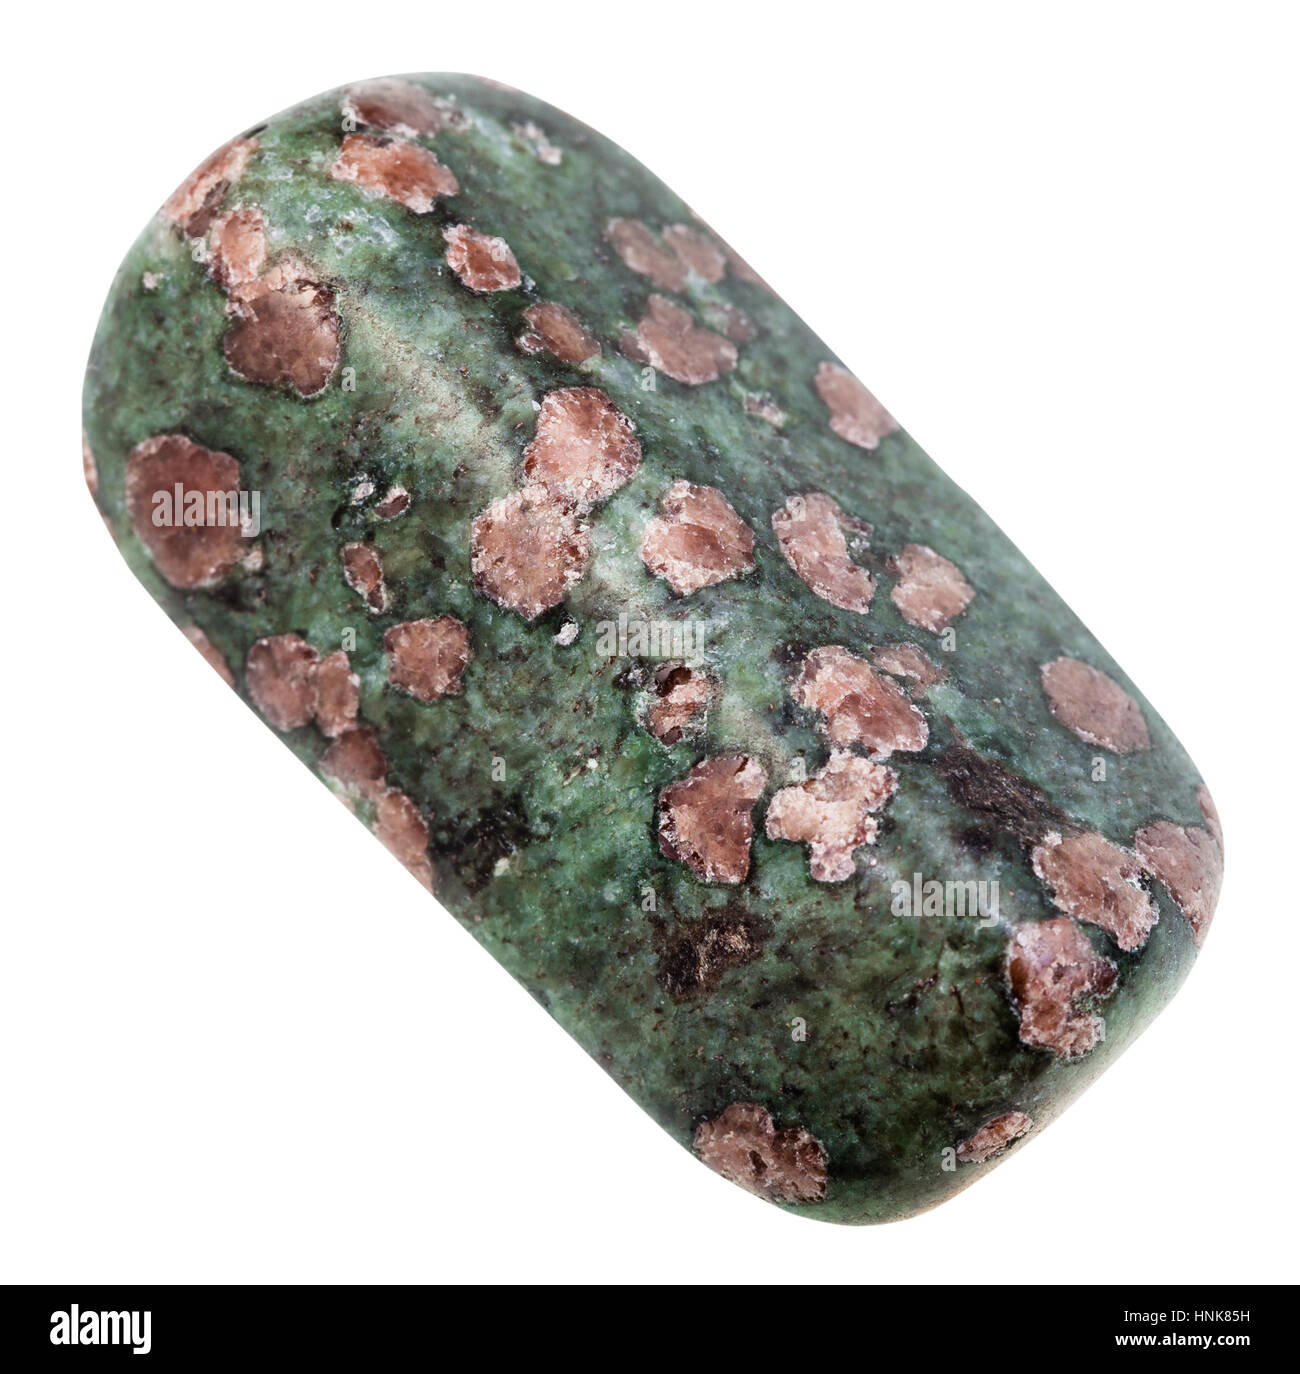 Makro-Aufnahmen der geologischen Sammlung Mineral - Trommelsteine Eklogit Stein (rosa Granat Almandin-Pyrop Kristalle in grünen Matrix aus Pyroxen, Omphazit Stockfoto